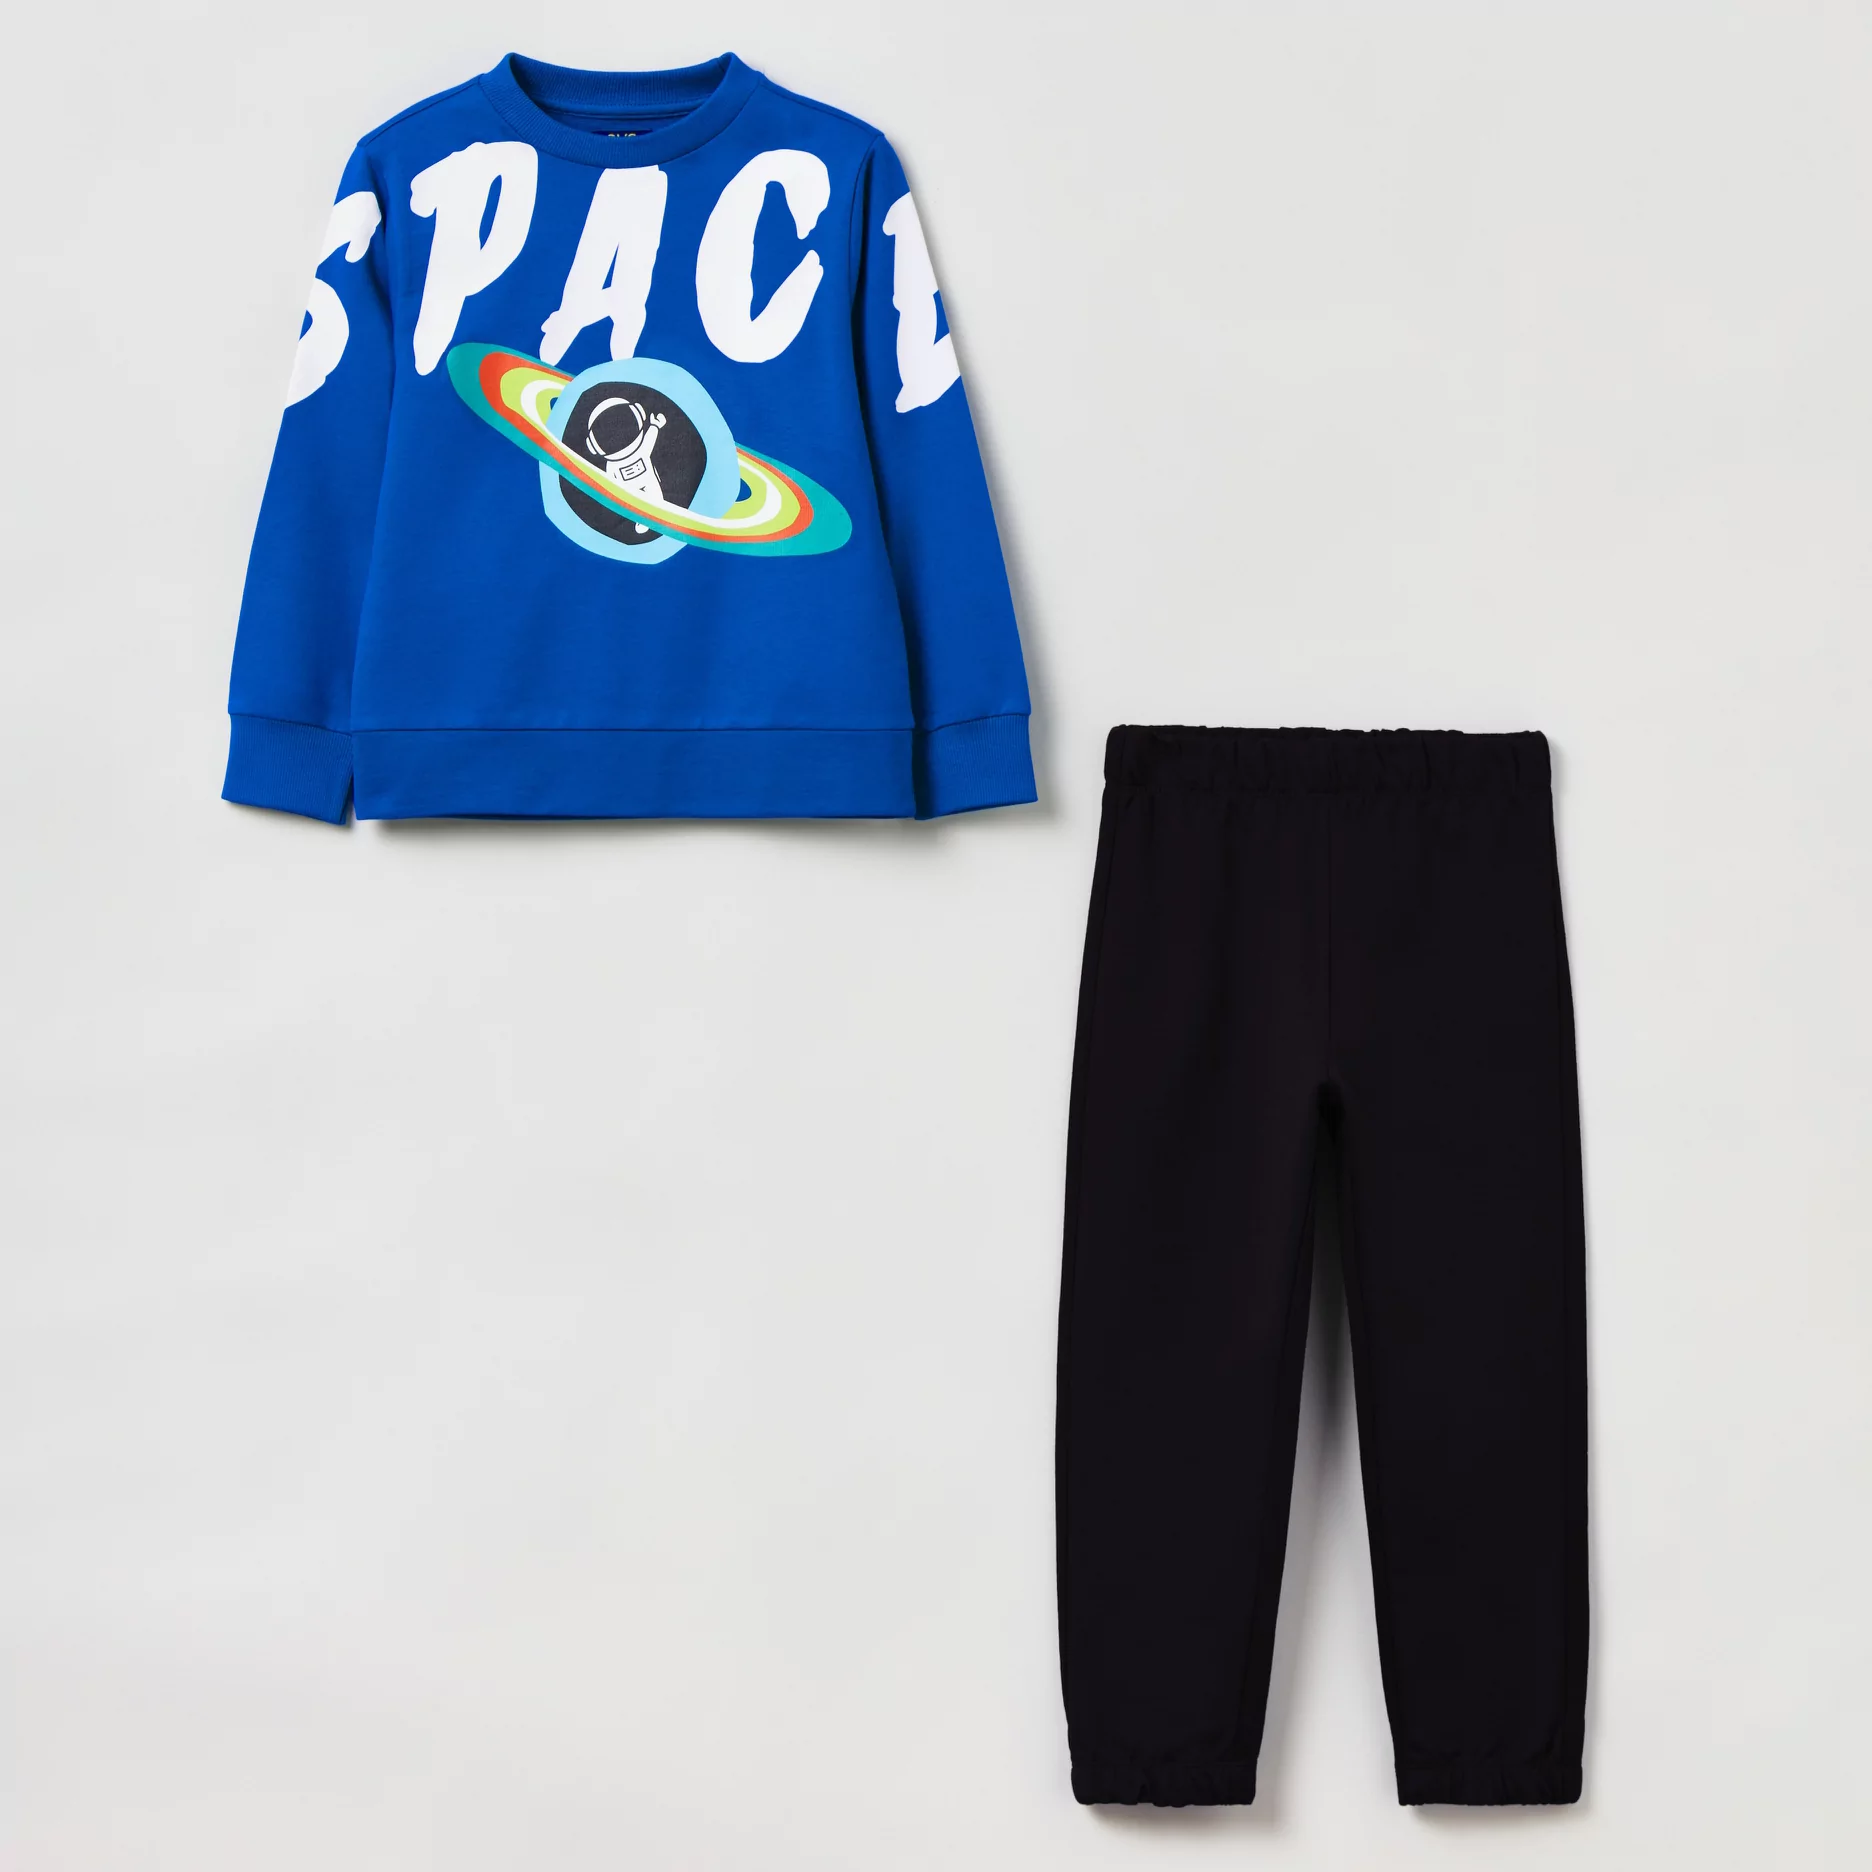 Komplet (bluza + spodnie) dla dzieci OVS Jogging Set Limoges 1816221 122 cm  Niebieski (8056781485866) - Ceny i opinie na Skapiec.pl